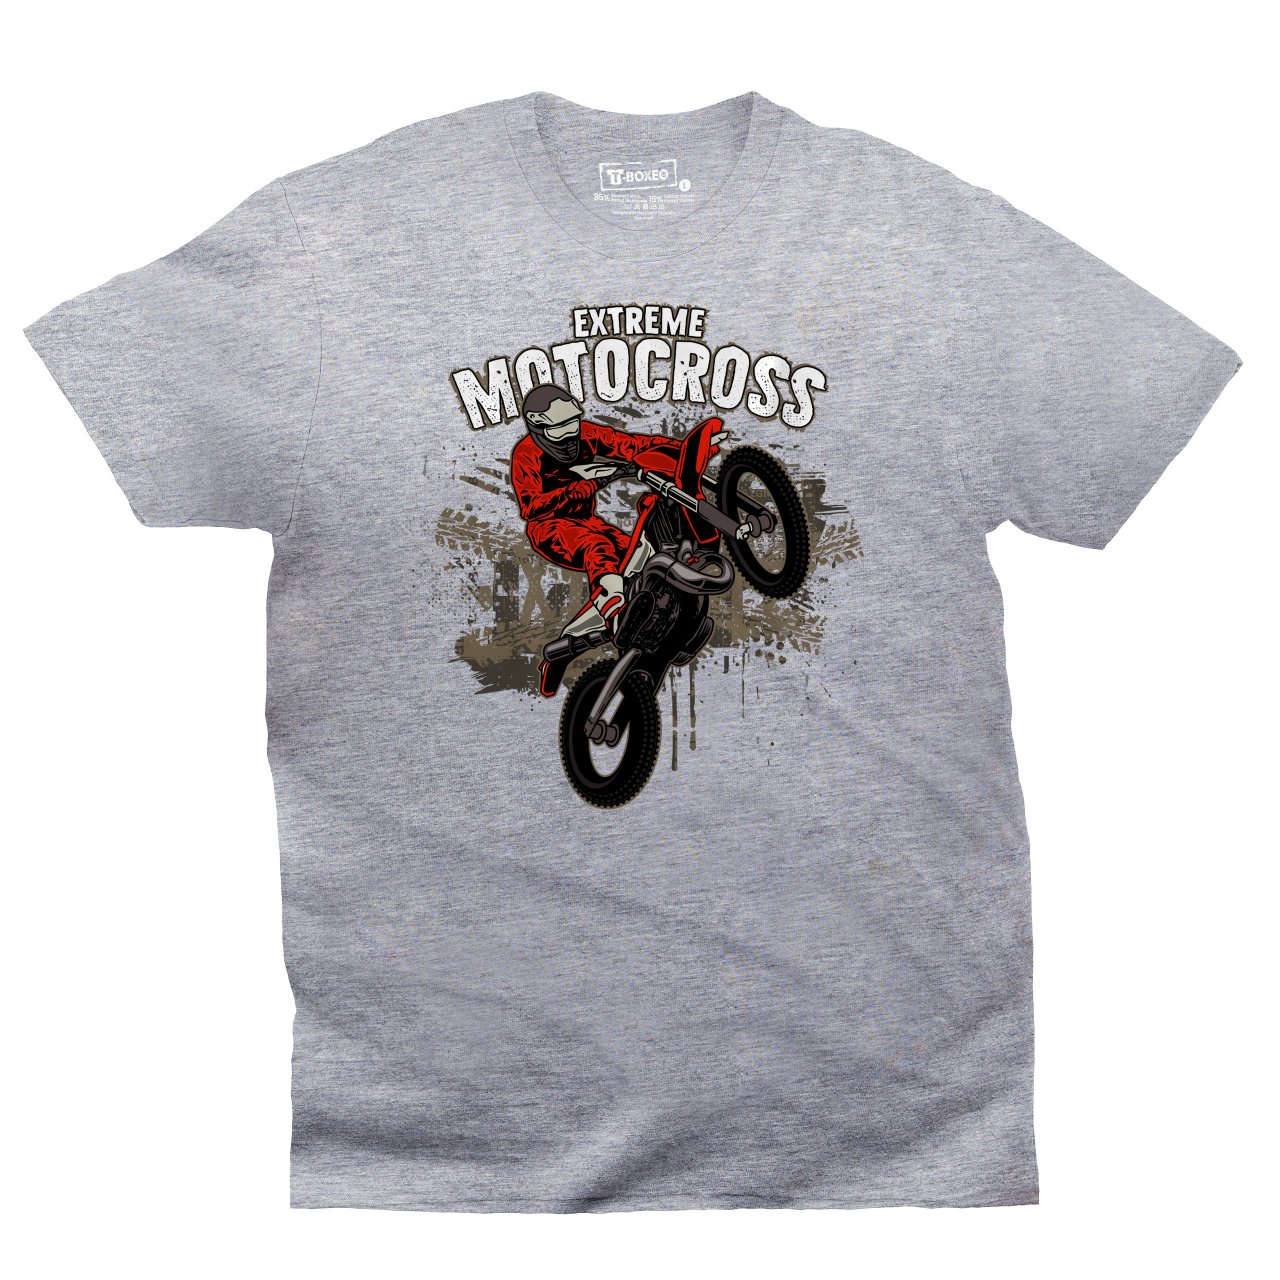 Pánské tričko s potiskem “Extreme Motocross"